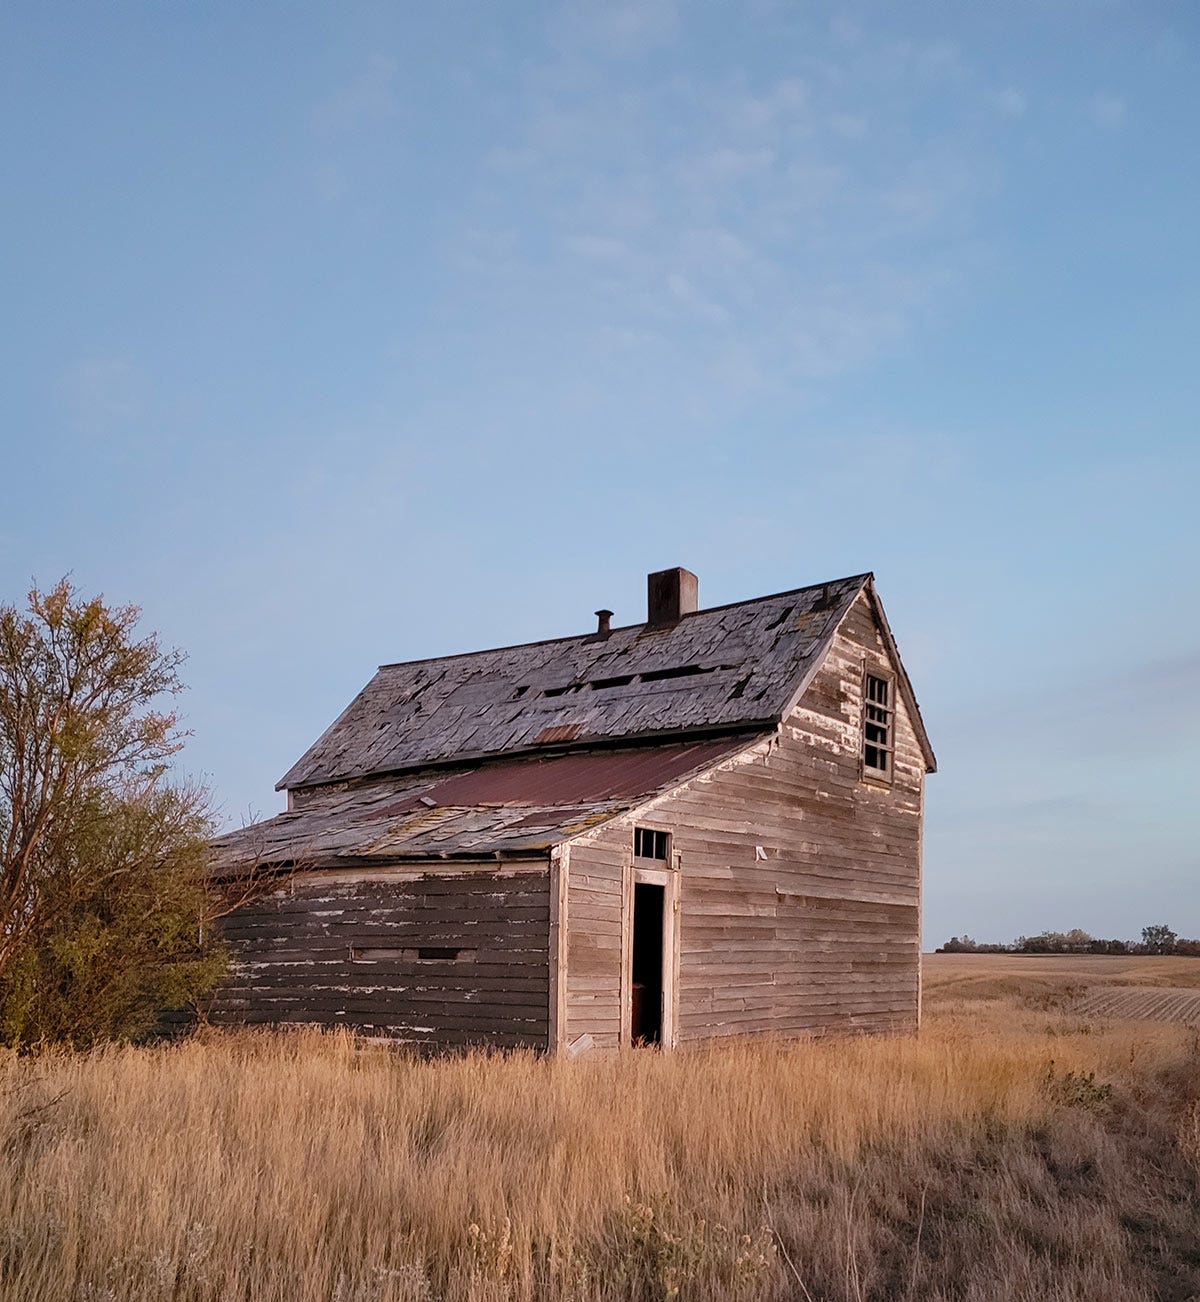 An old farmhouse on the prairie.